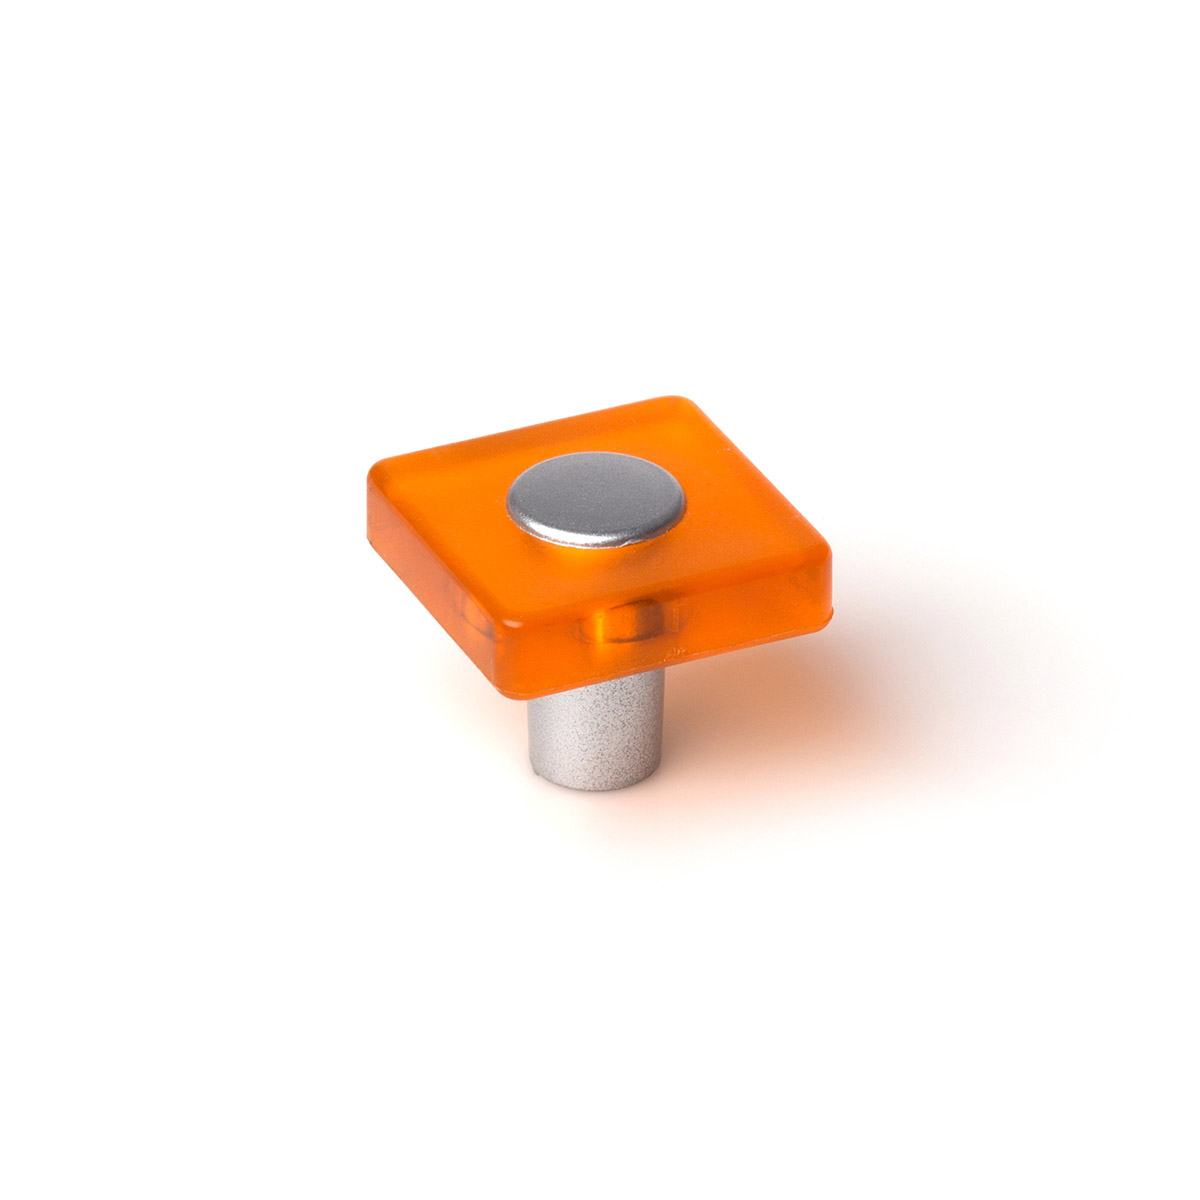 Bouton en plastique avec finition orange, dimensions: 30x30x26mm